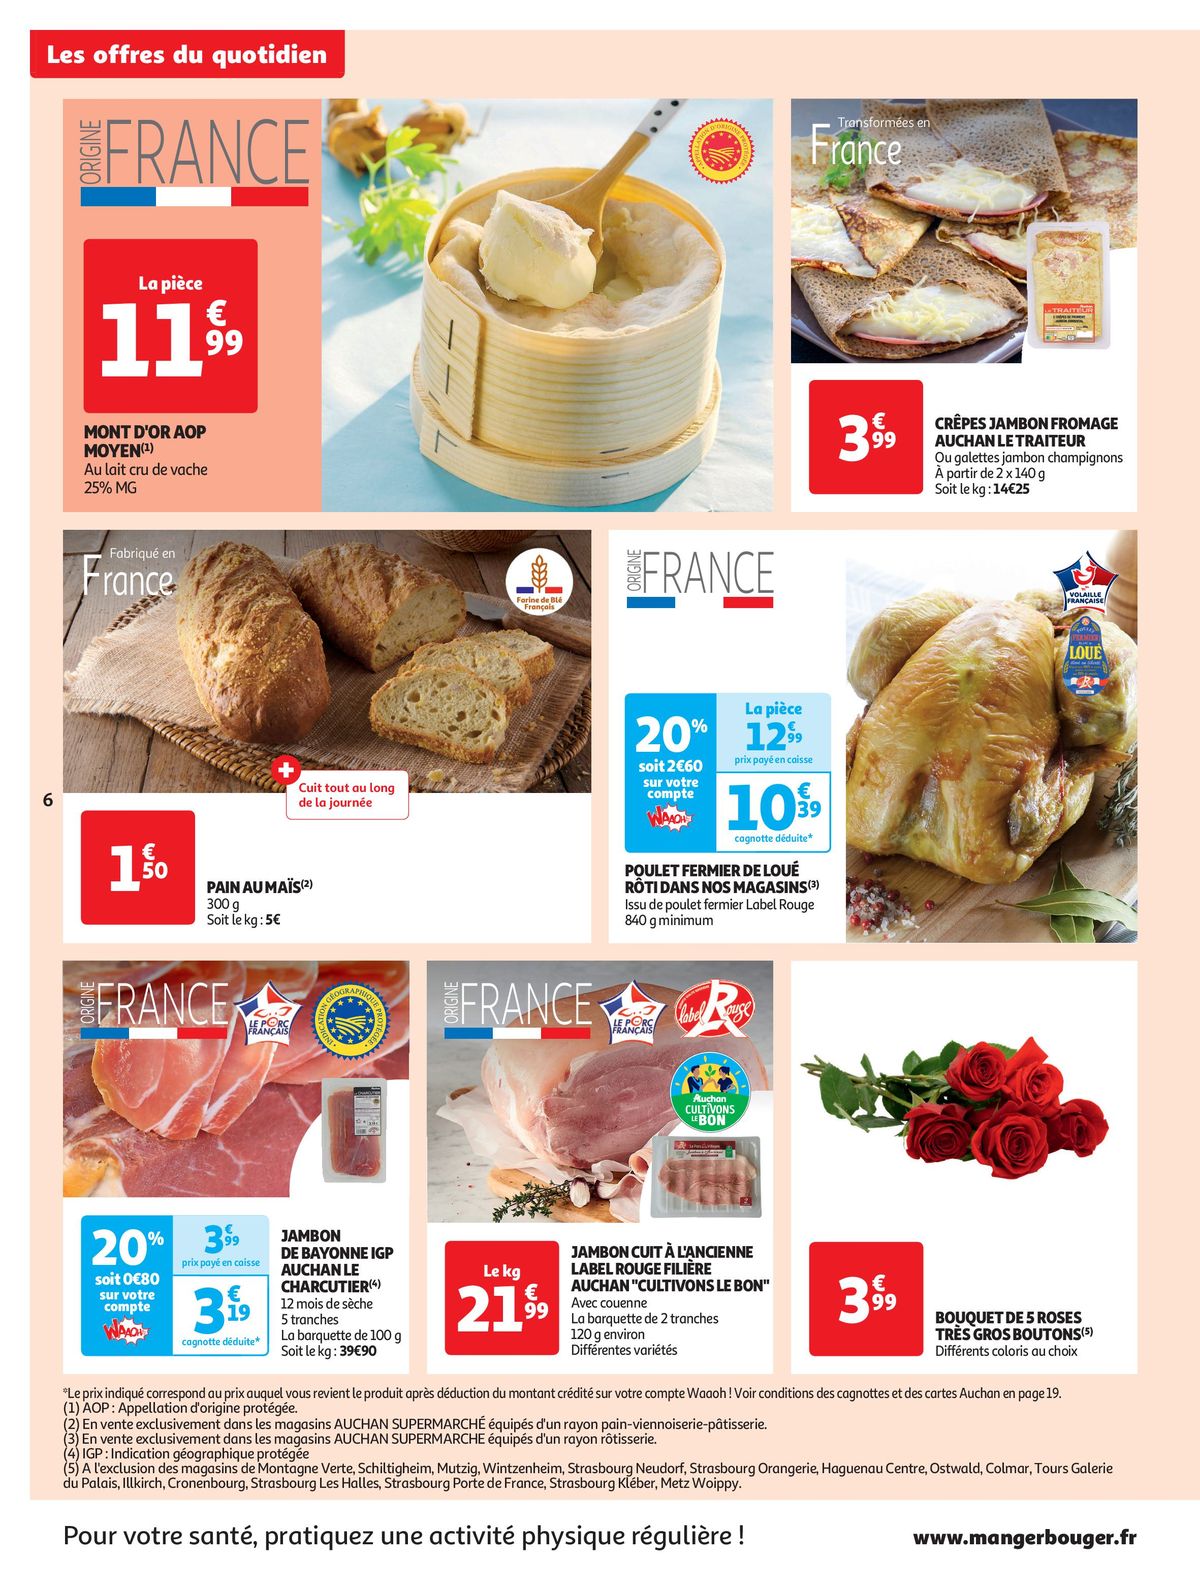 Catalogue Spécial Cuisine Gourmane dans votre supermarché, page 00006